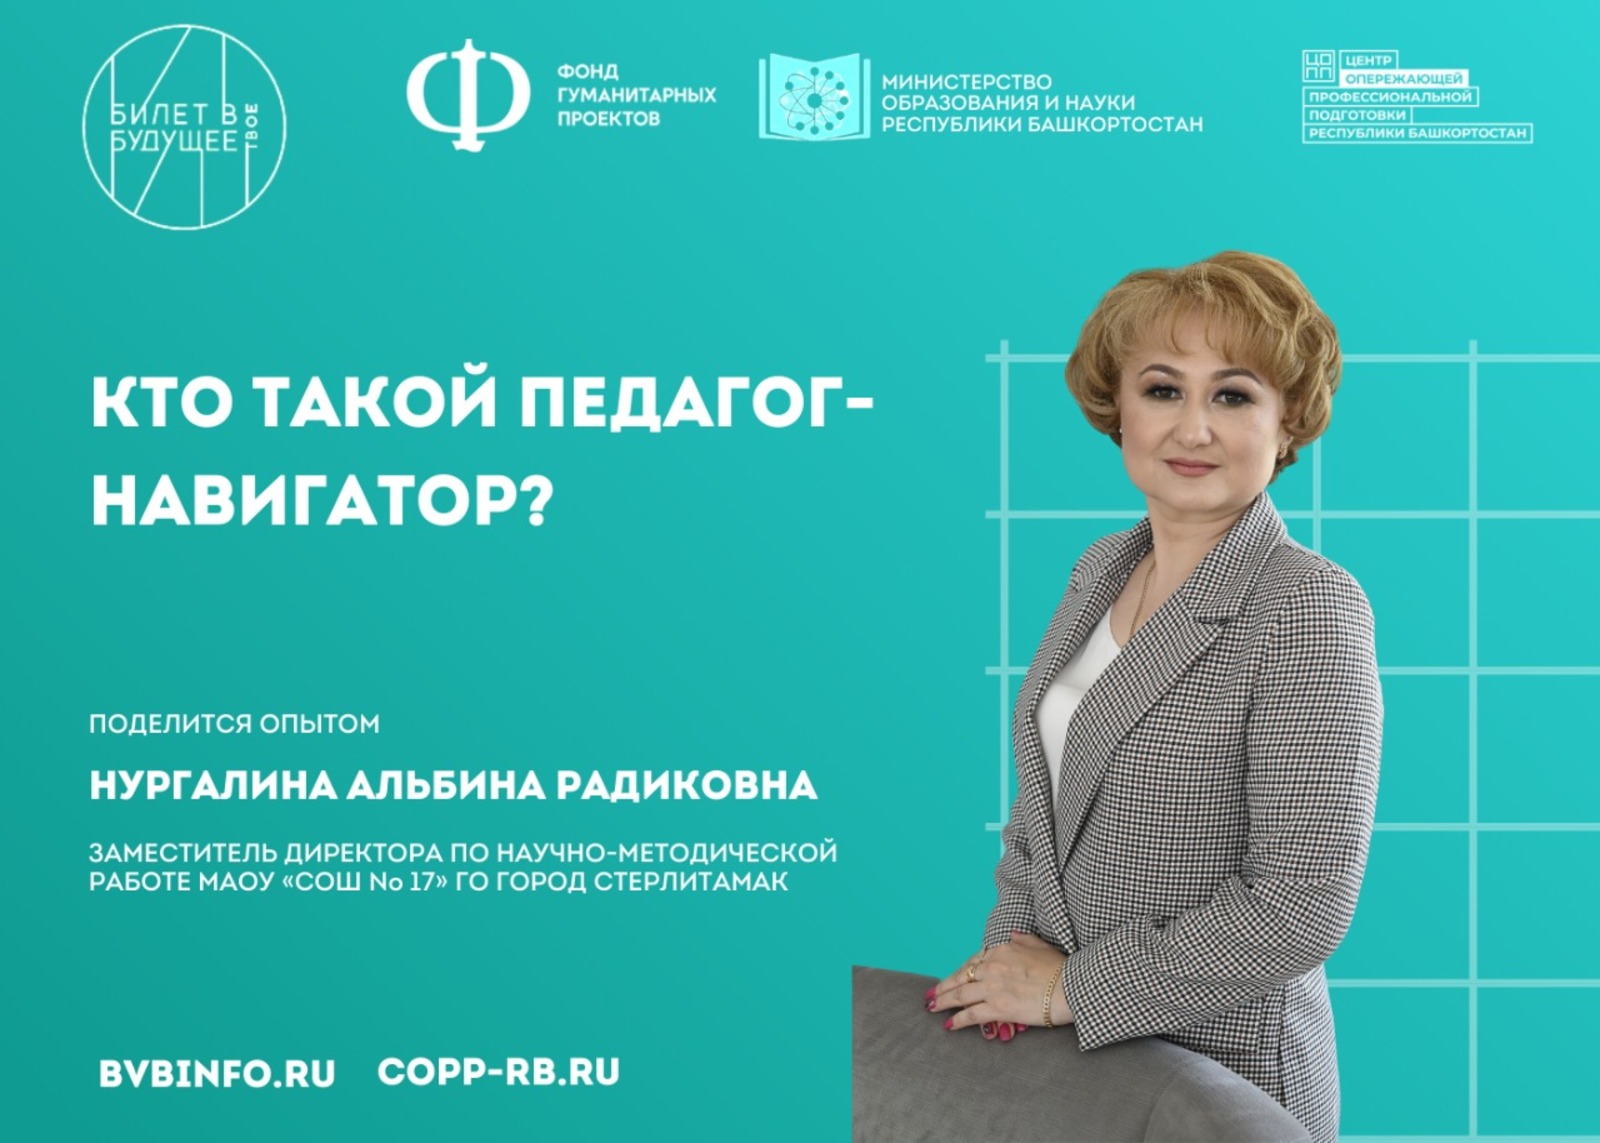 158 педагогов-навигаторов Республики Башкортостан участвуют  в проекте «Билет в будущее»